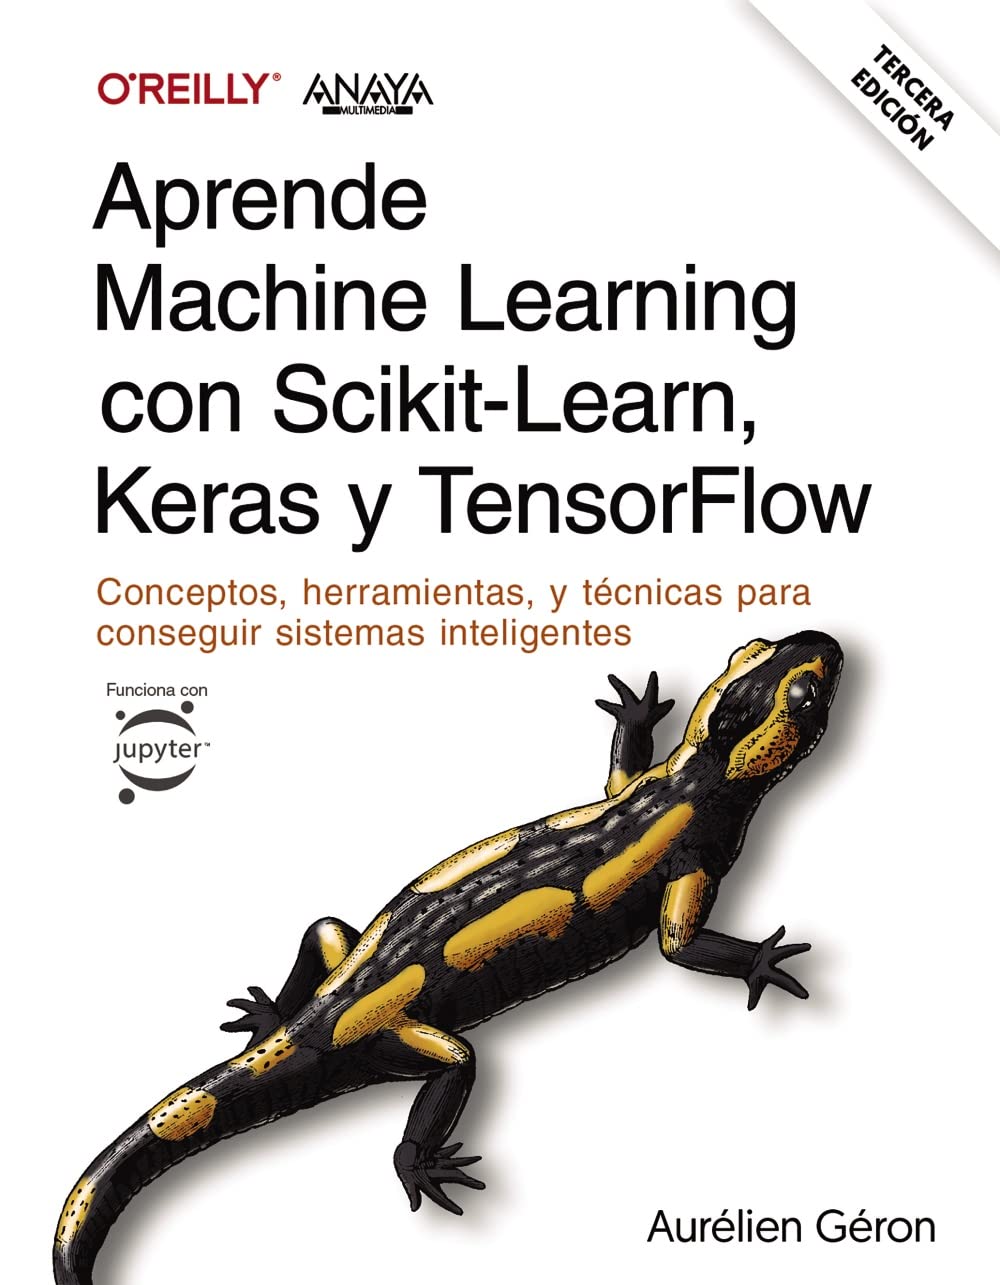 Aprende Machine Learning con Scikit-Learn, Keras y TensorFlow. Tercera Edición: Conceptos, herramientas y técnicas para conseguir sistemas inteligentes